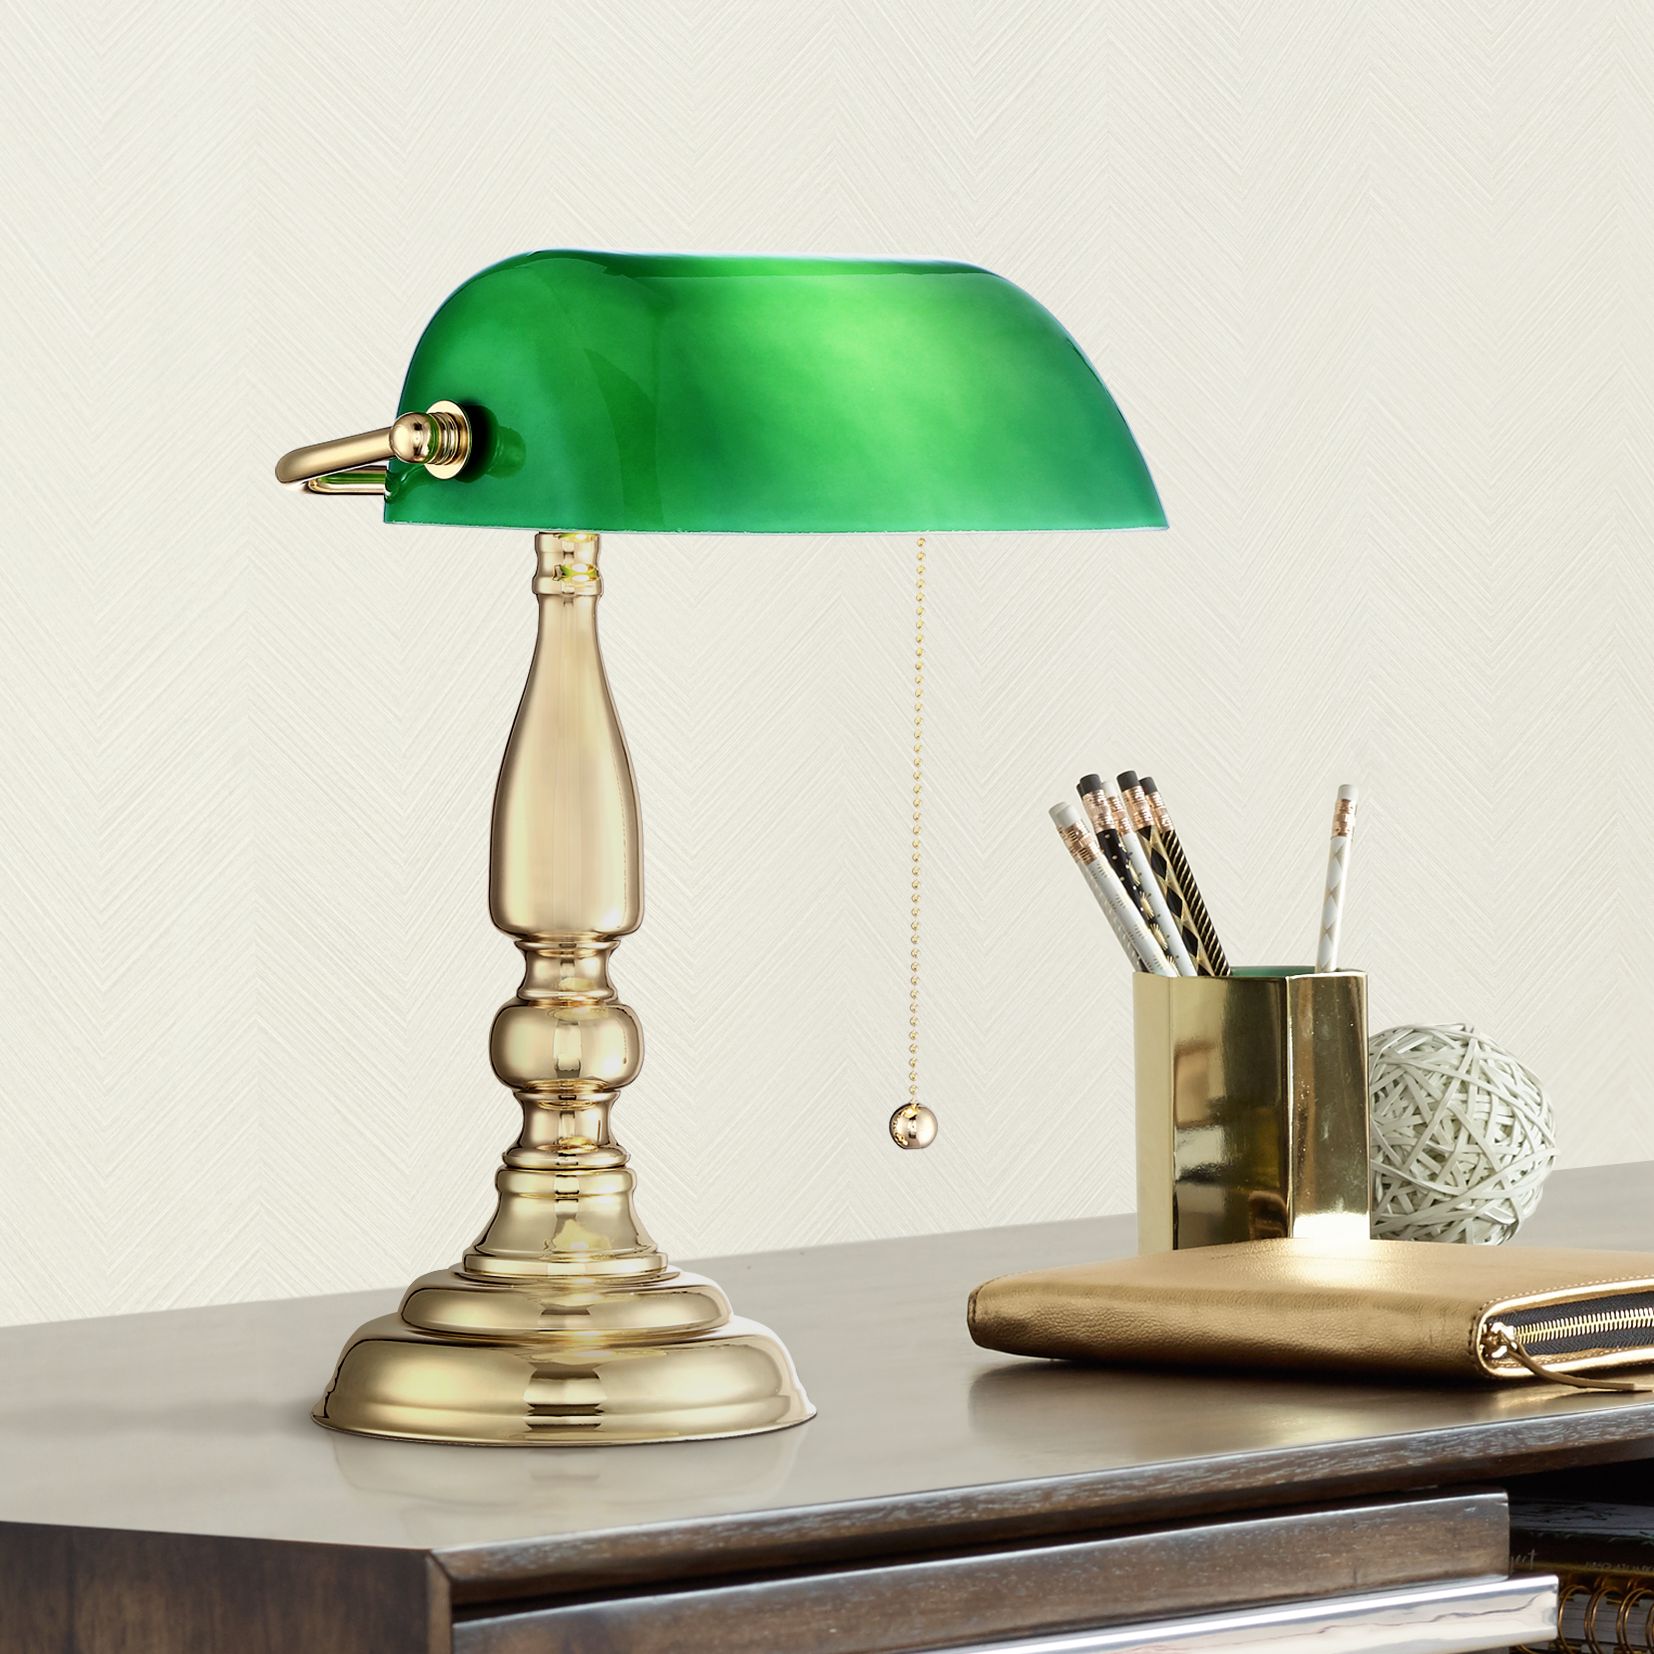 green bankers desk lamp